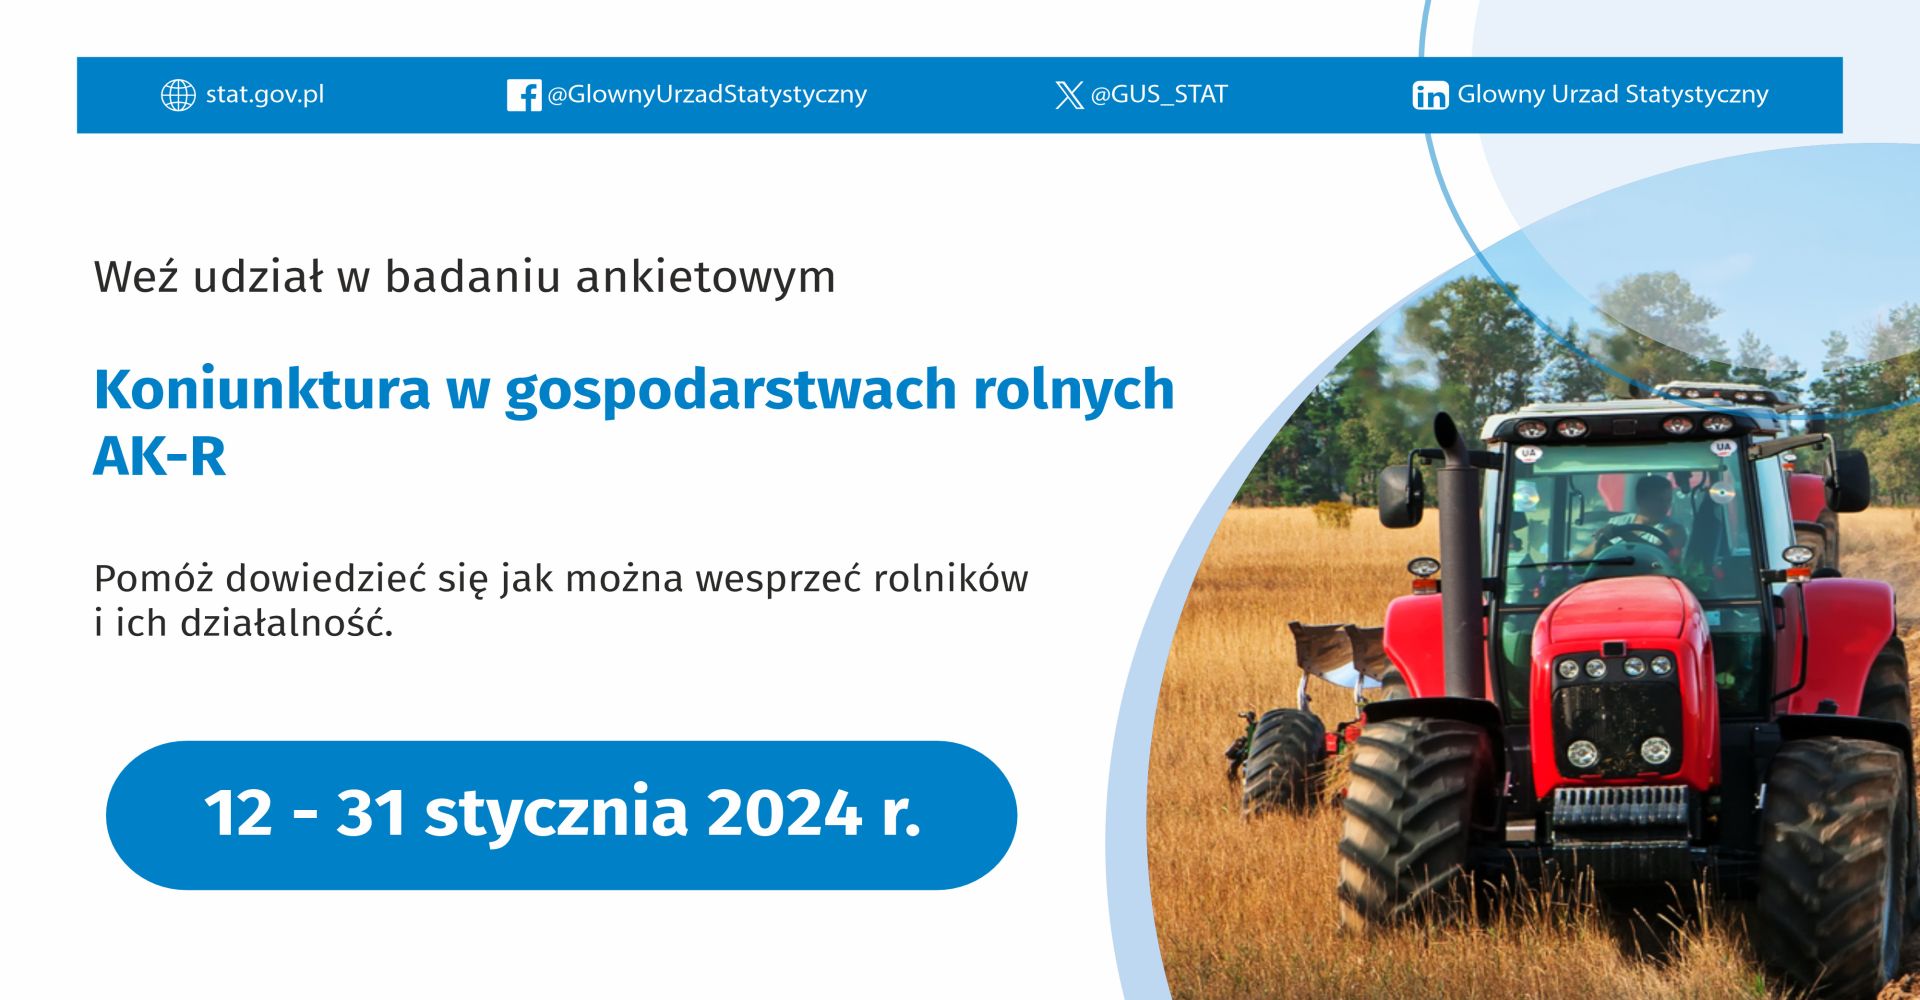 plakat weź udział w badaniu ankietowym koniunktura w gospodarstwie rolnym AK-R od 12 do 31 stycznia 2024 r.